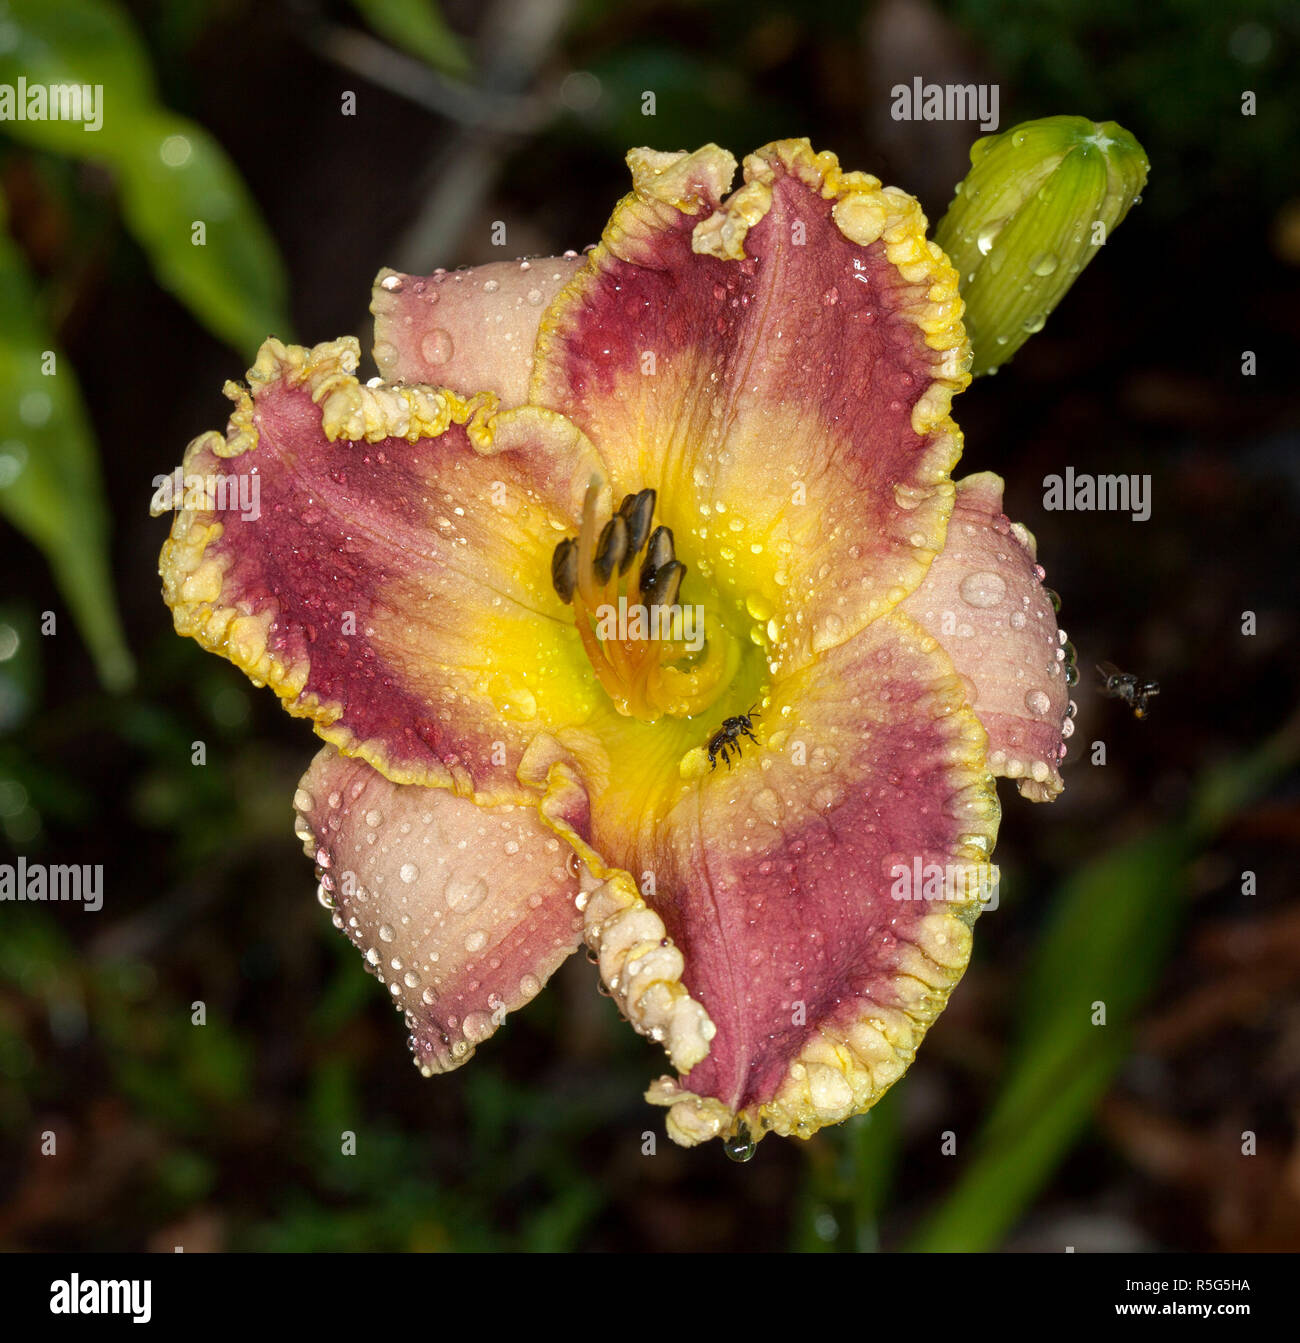 Spektakuläre rote und gelbe Blume des Daylily, Hemerocallis 'Alexa Kathryn', mit Regentropfen & einheimische Biene auf frilly umrandete Blütenblätter gegen den dunklen Hintergrund Stockfoto